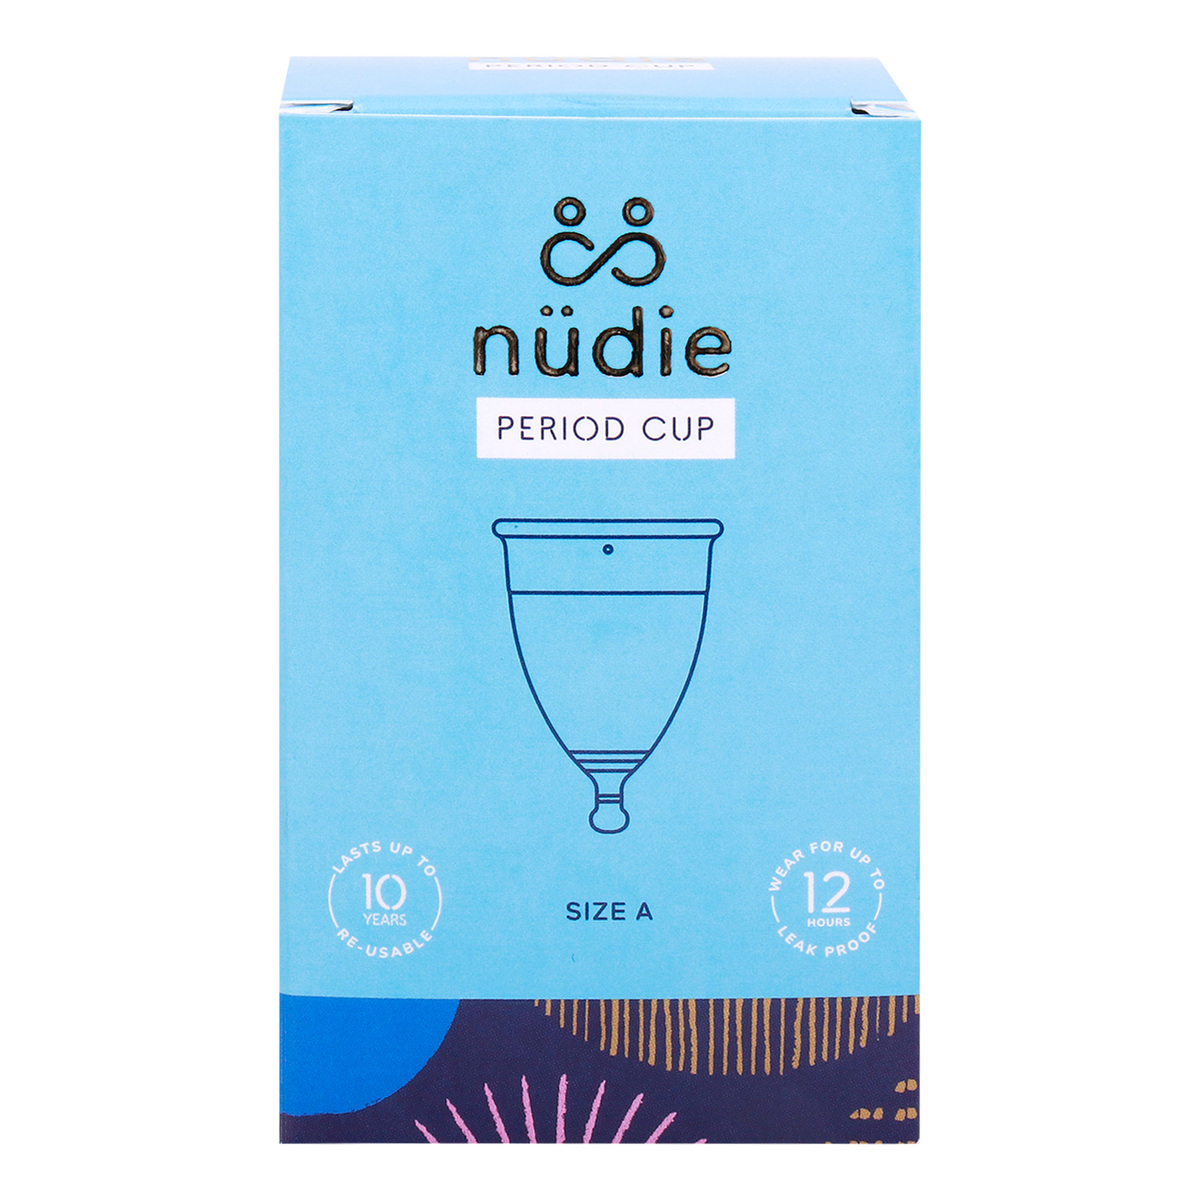 Nudie Period Cup Size A Medium